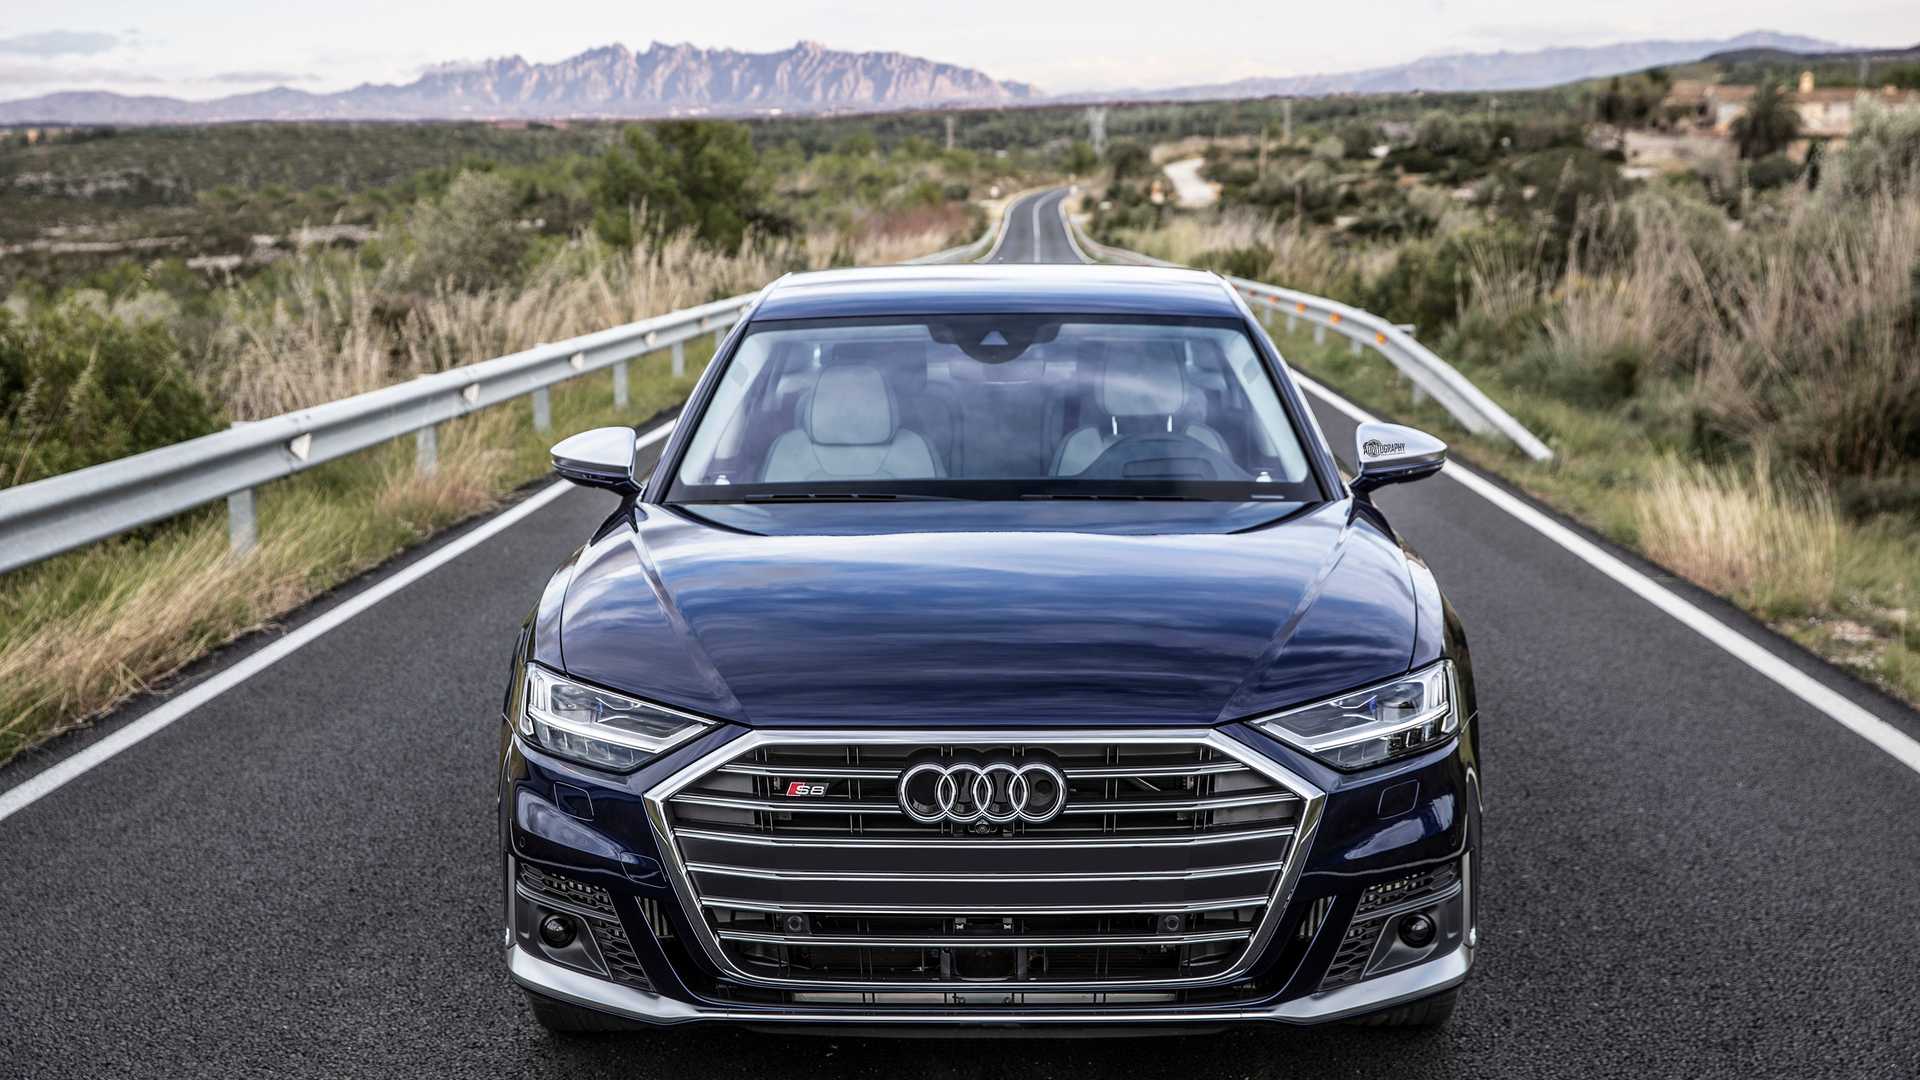 Audi s8 2019-2020 - фото, цена и характеристики новой модели ауди с8